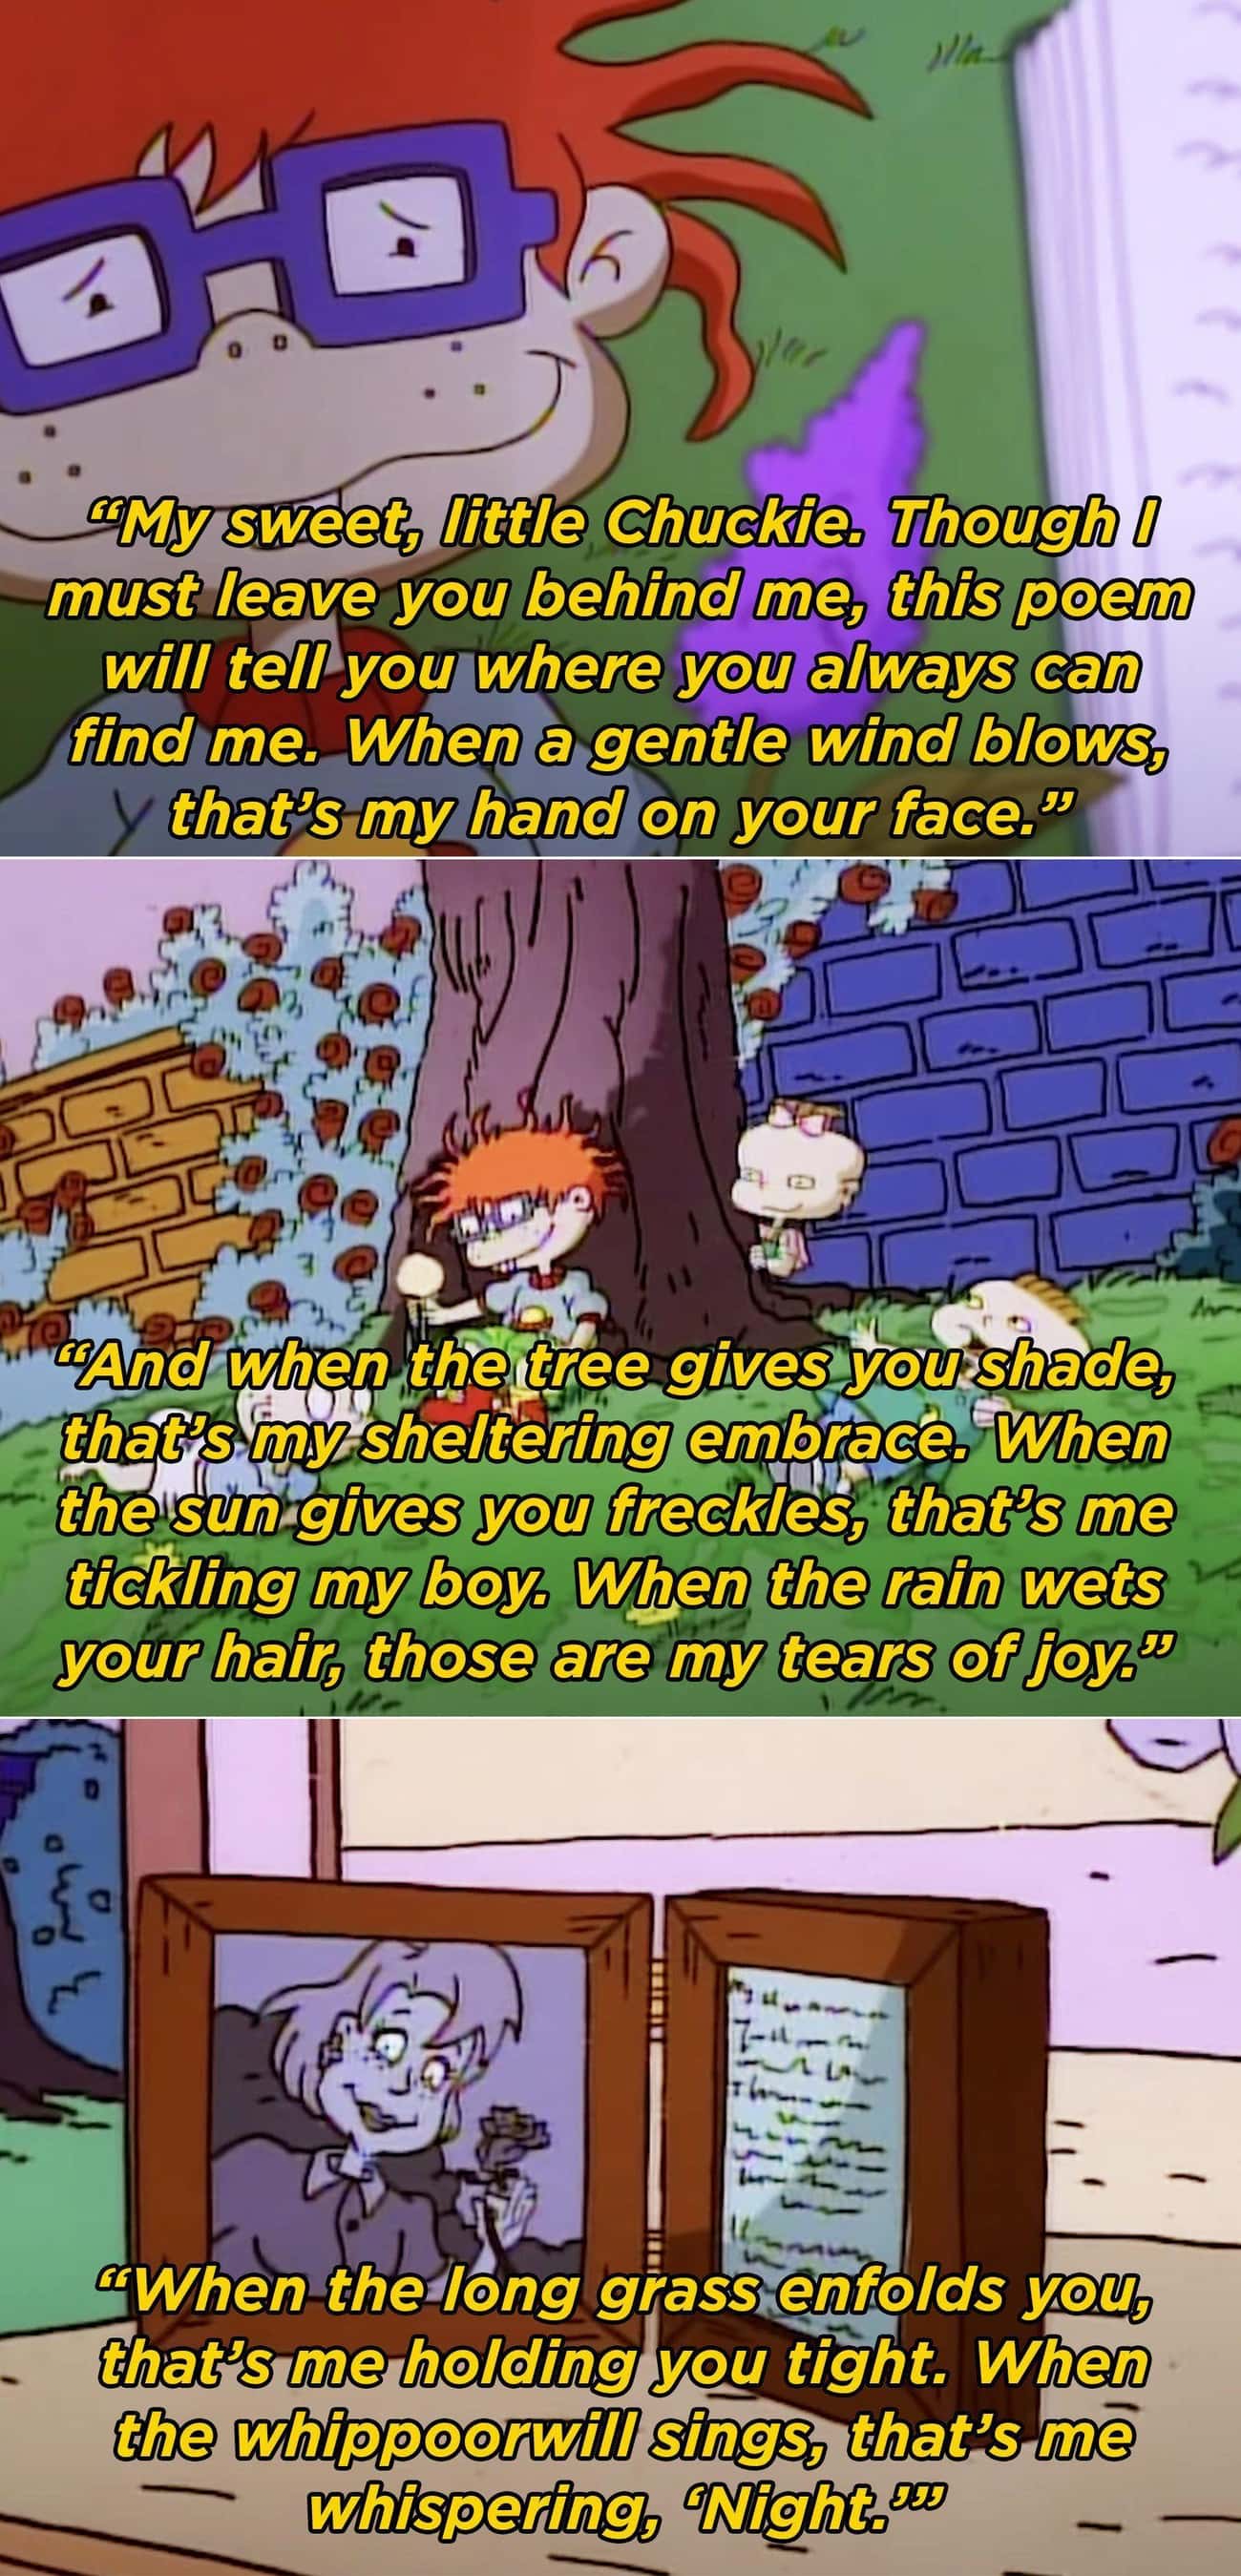 Chucky's Mom's Poem